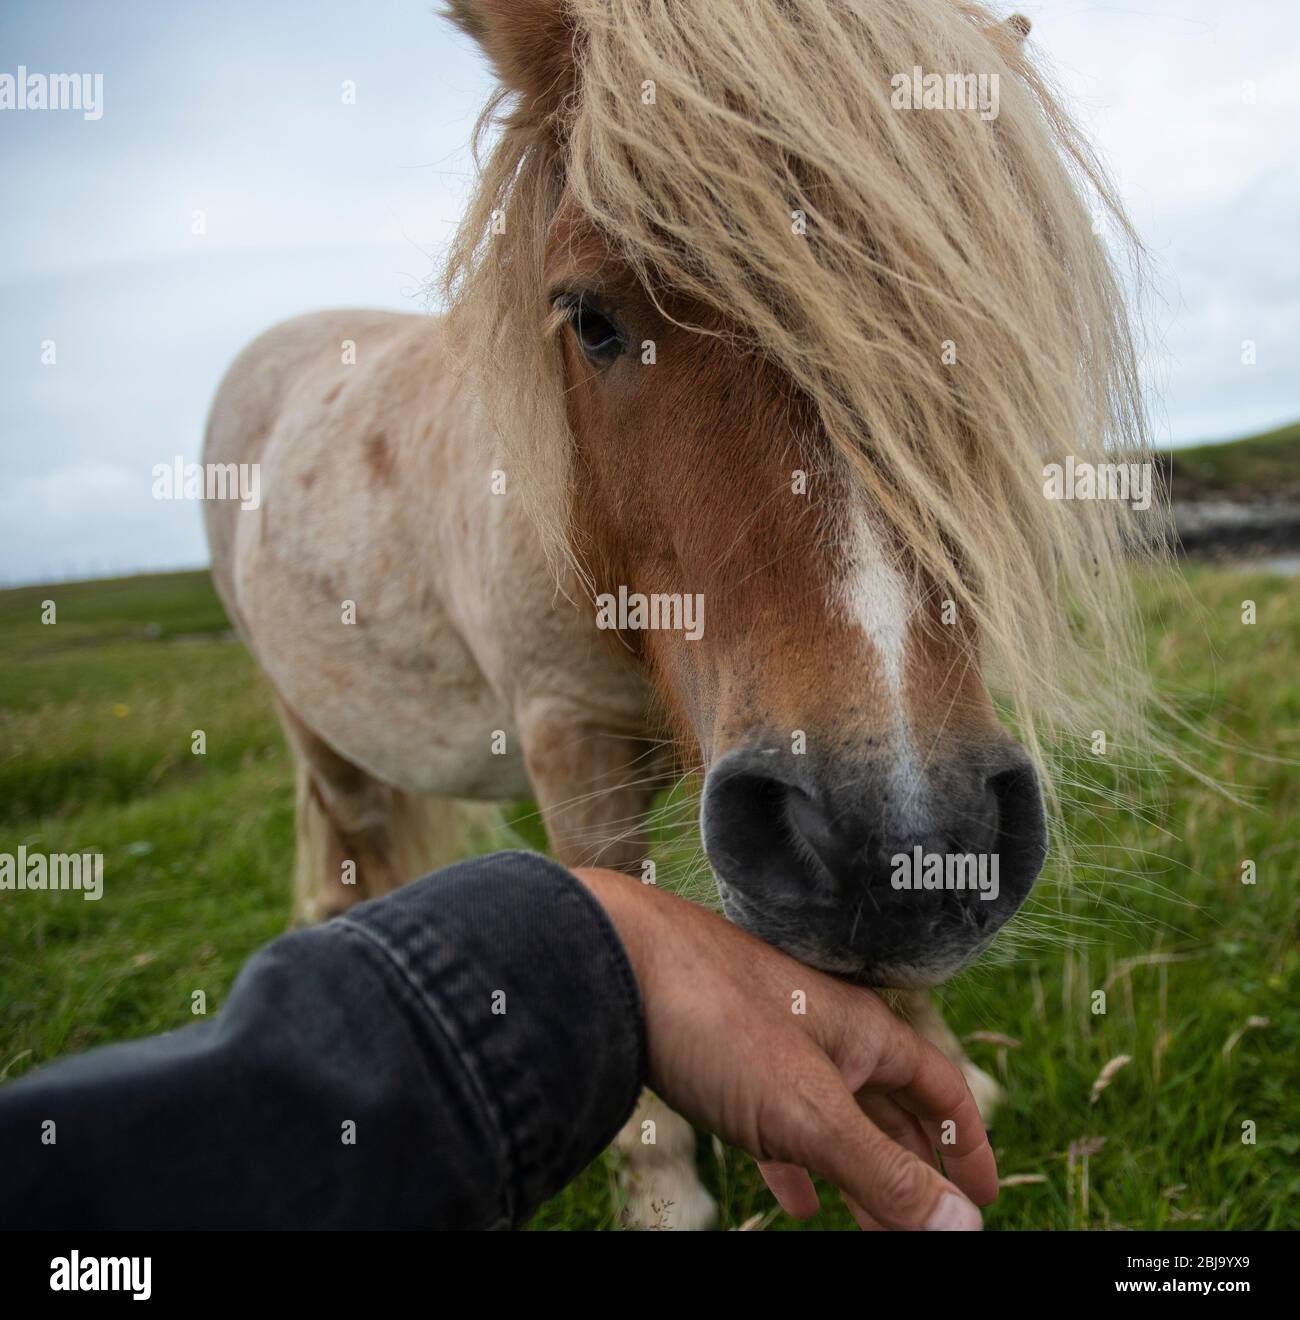 gentle encounter with shetland pony Stock Photo